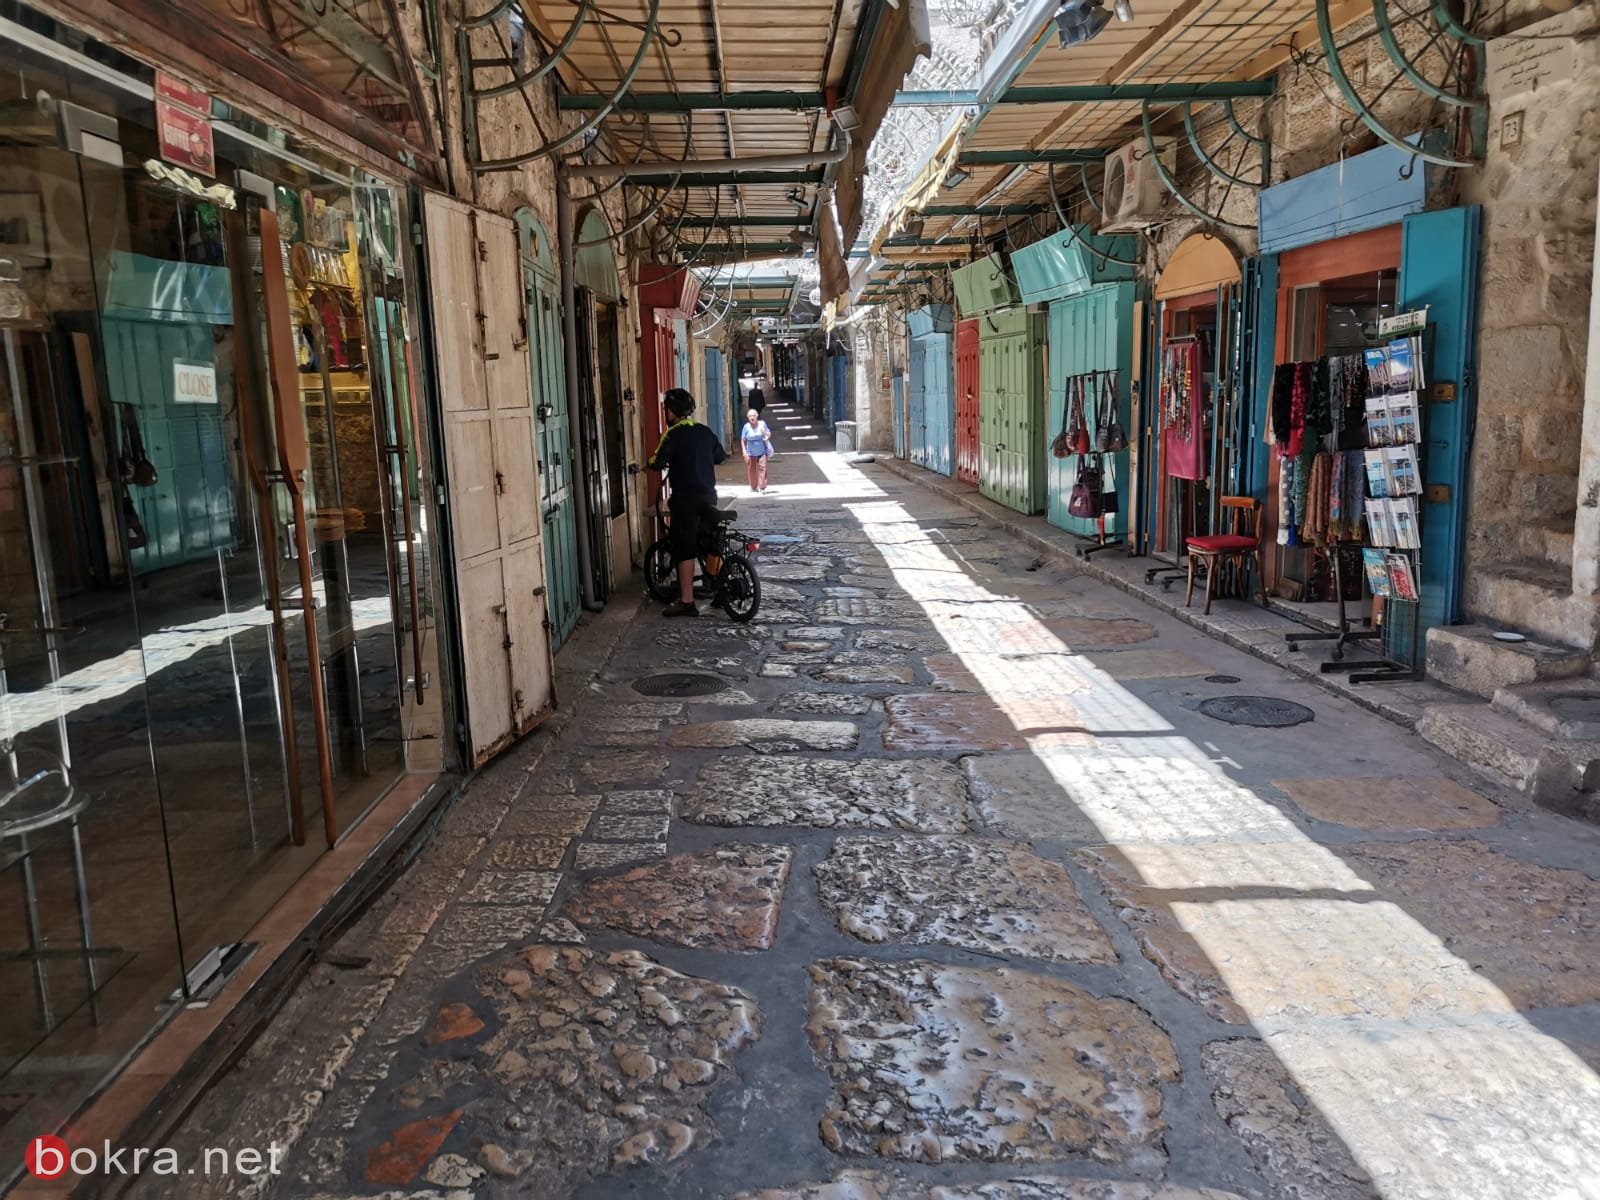   عشية العيد : أسواق القدس القديمة حزينة وخالية-15